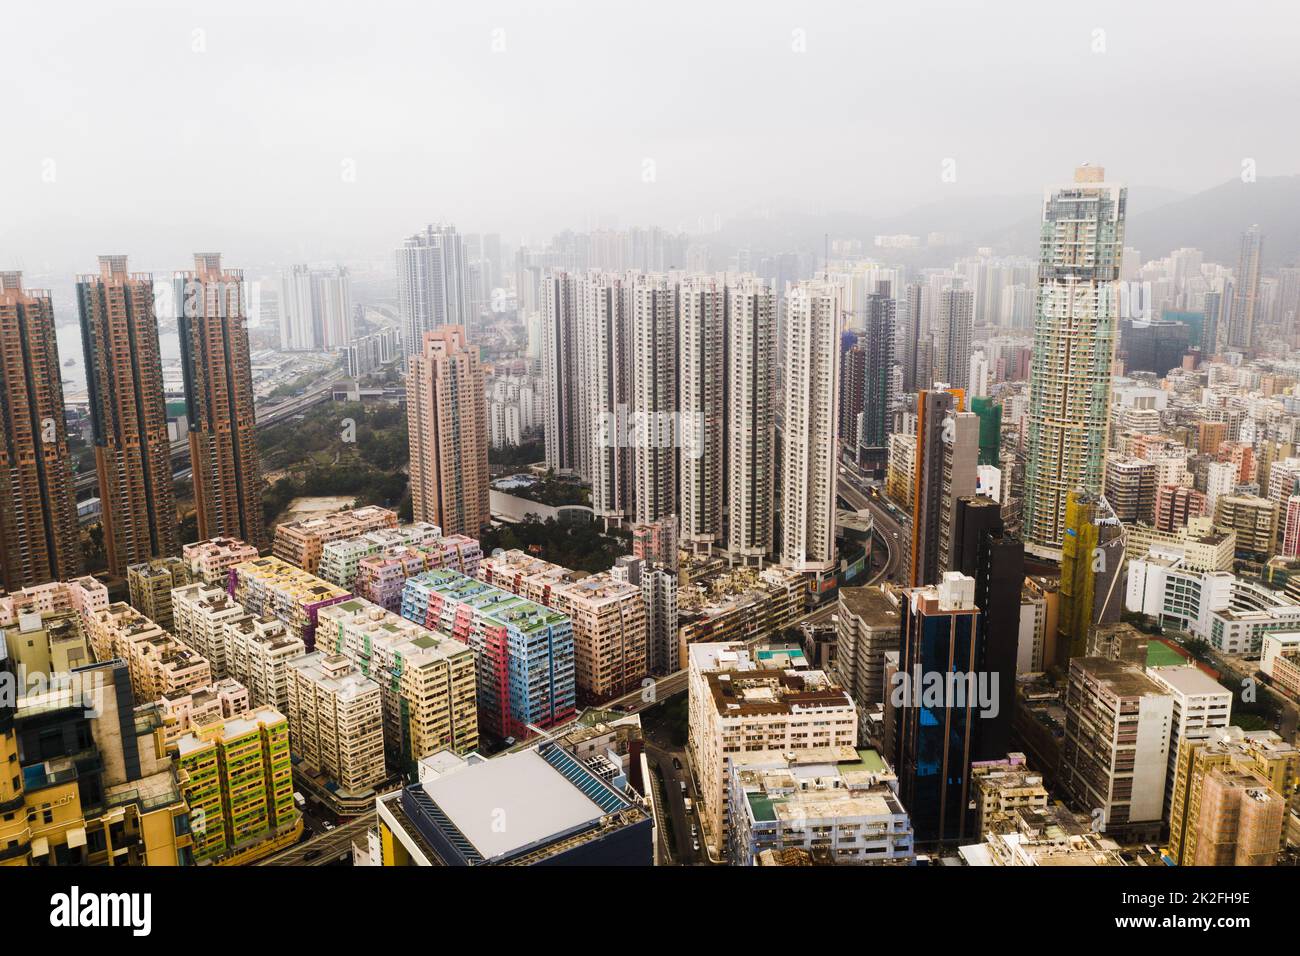 È una città che vale la pena esplorare. Sparato di grattacieli, blocchi di uffici e altri edifici commerciali nella metropoli urbana di Hong Kong. Foto Stock